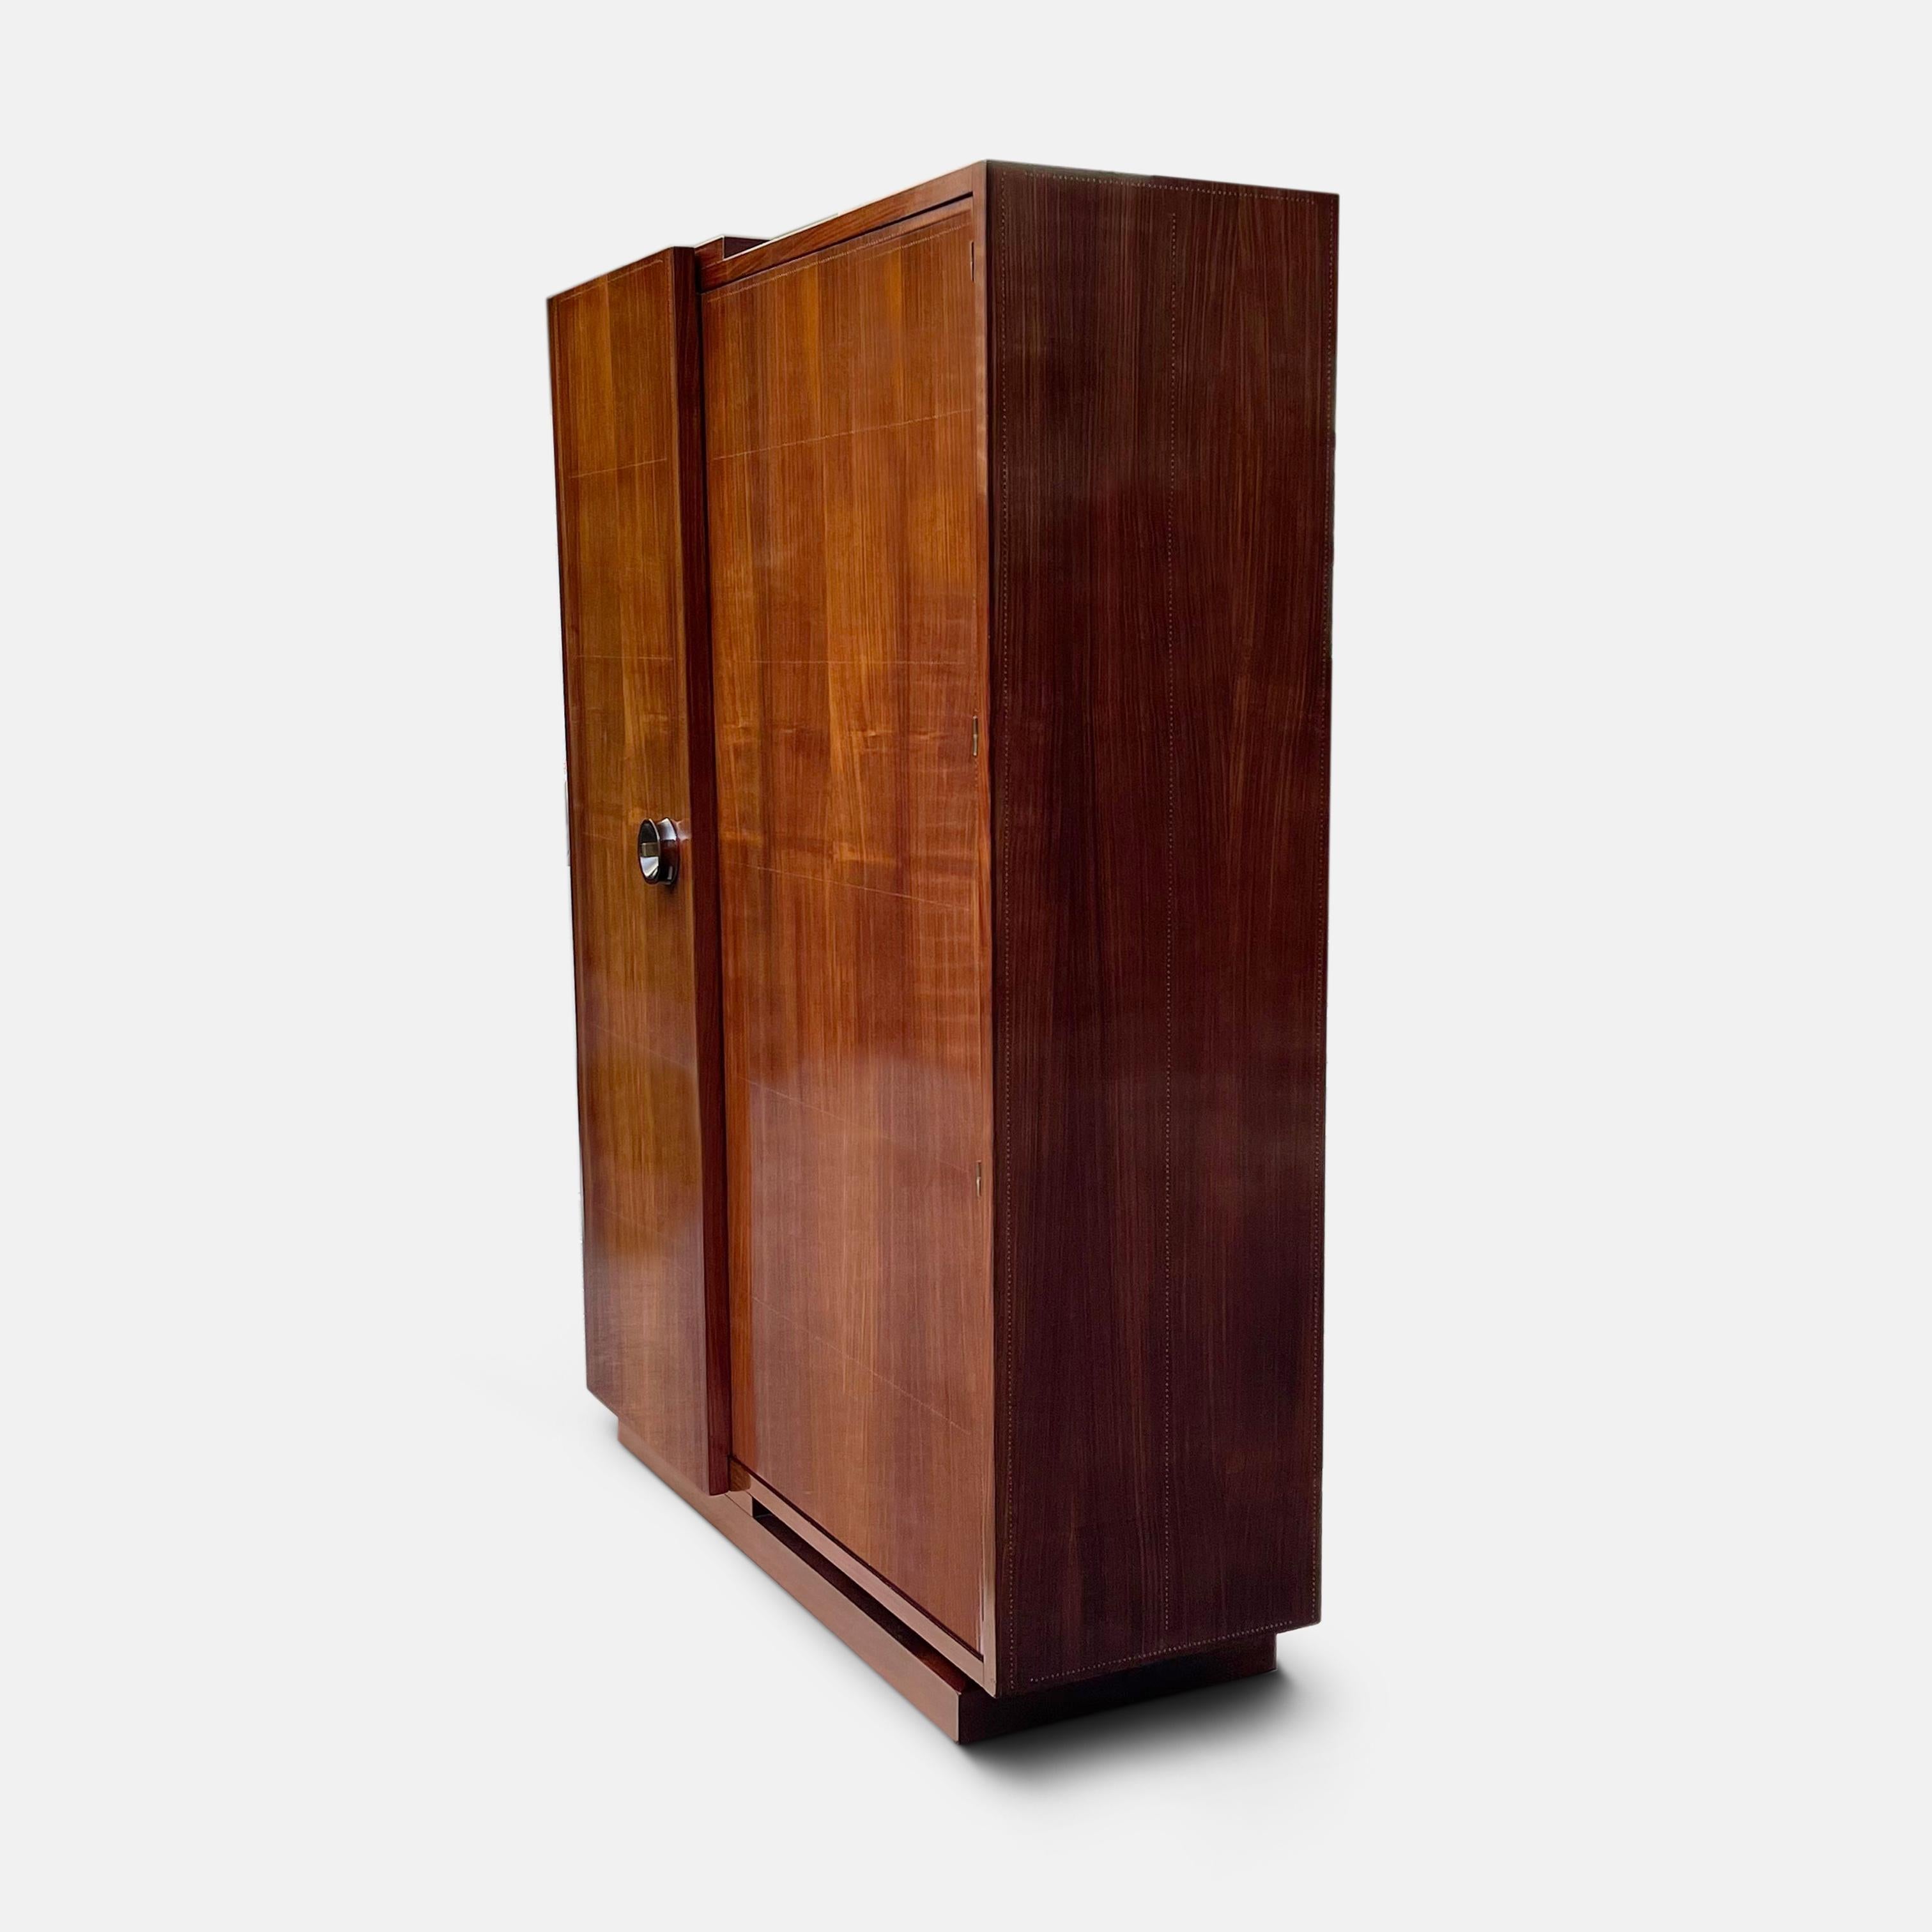 Cette armoire moderniste magistrale et exceptionnellement proportionnée d'André Sornay montre pourquoi sa stature en tant que l'un des plus importants designers de la période Art déco n'a fait que croître au fil du temps. Toujours à la recherche de